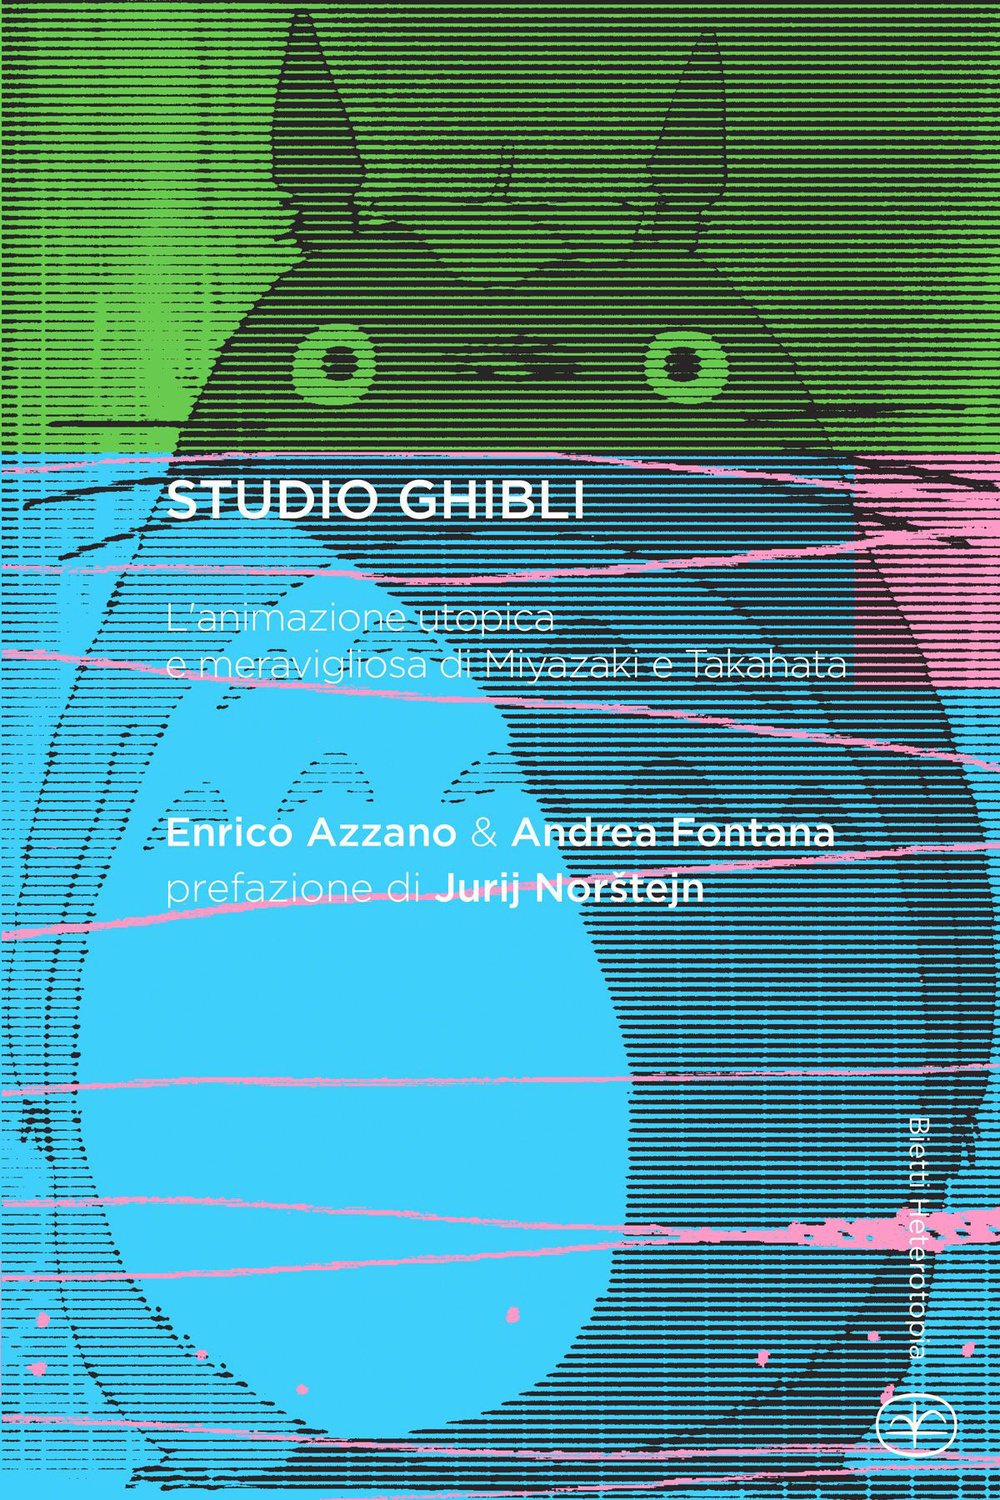 Studio Ghibli. L'animazione utopica e meravigliosa di Miyazaki e Takahata